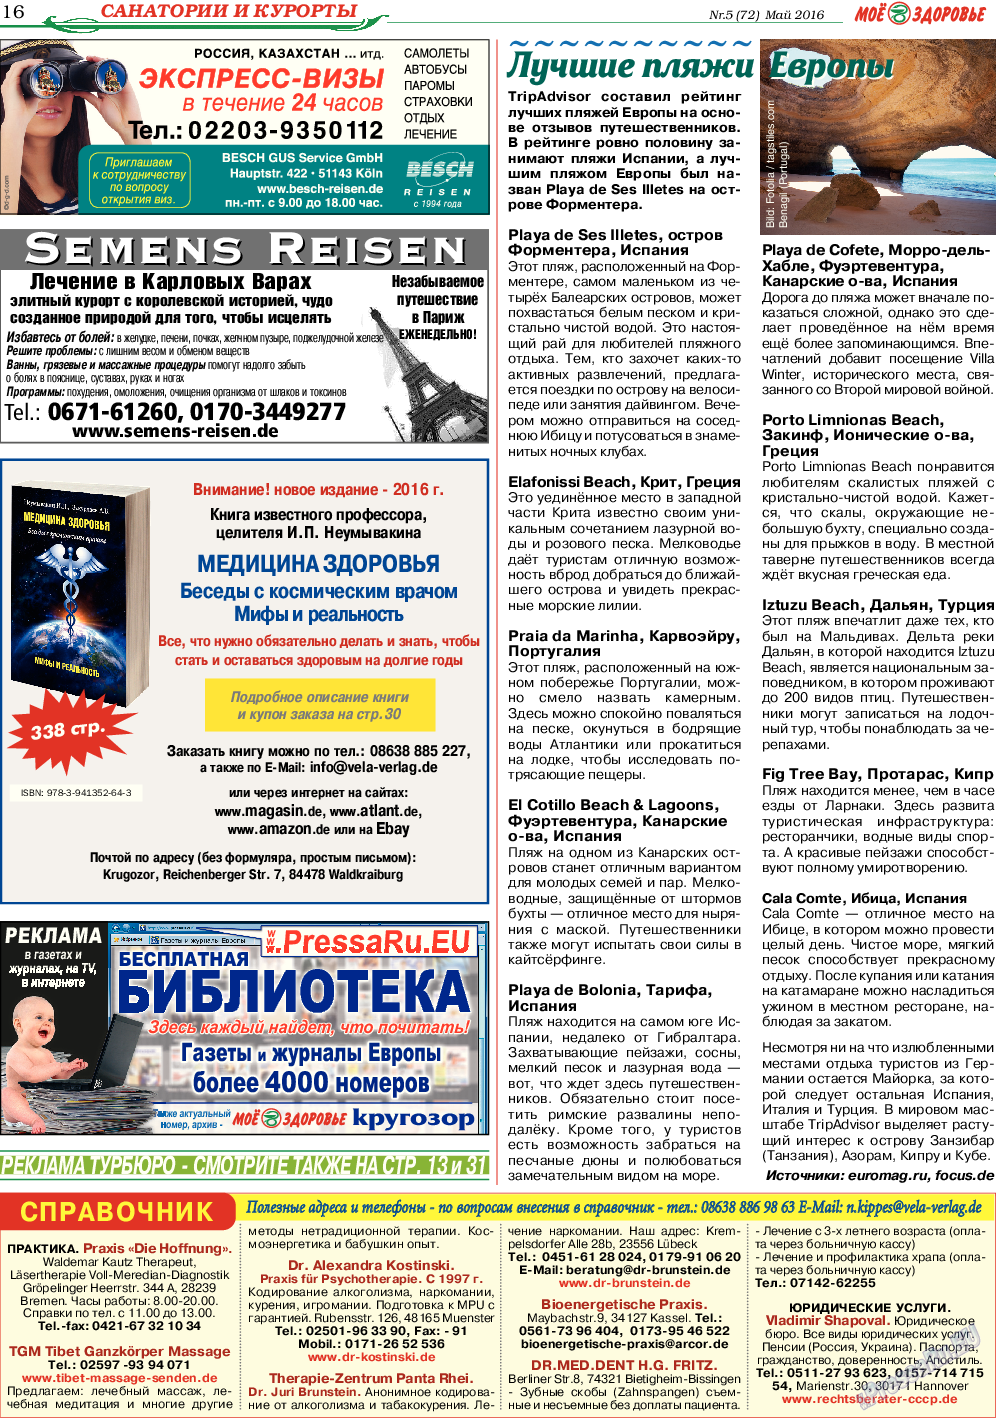 Кругозор, газета. 2016 №5 стр.16